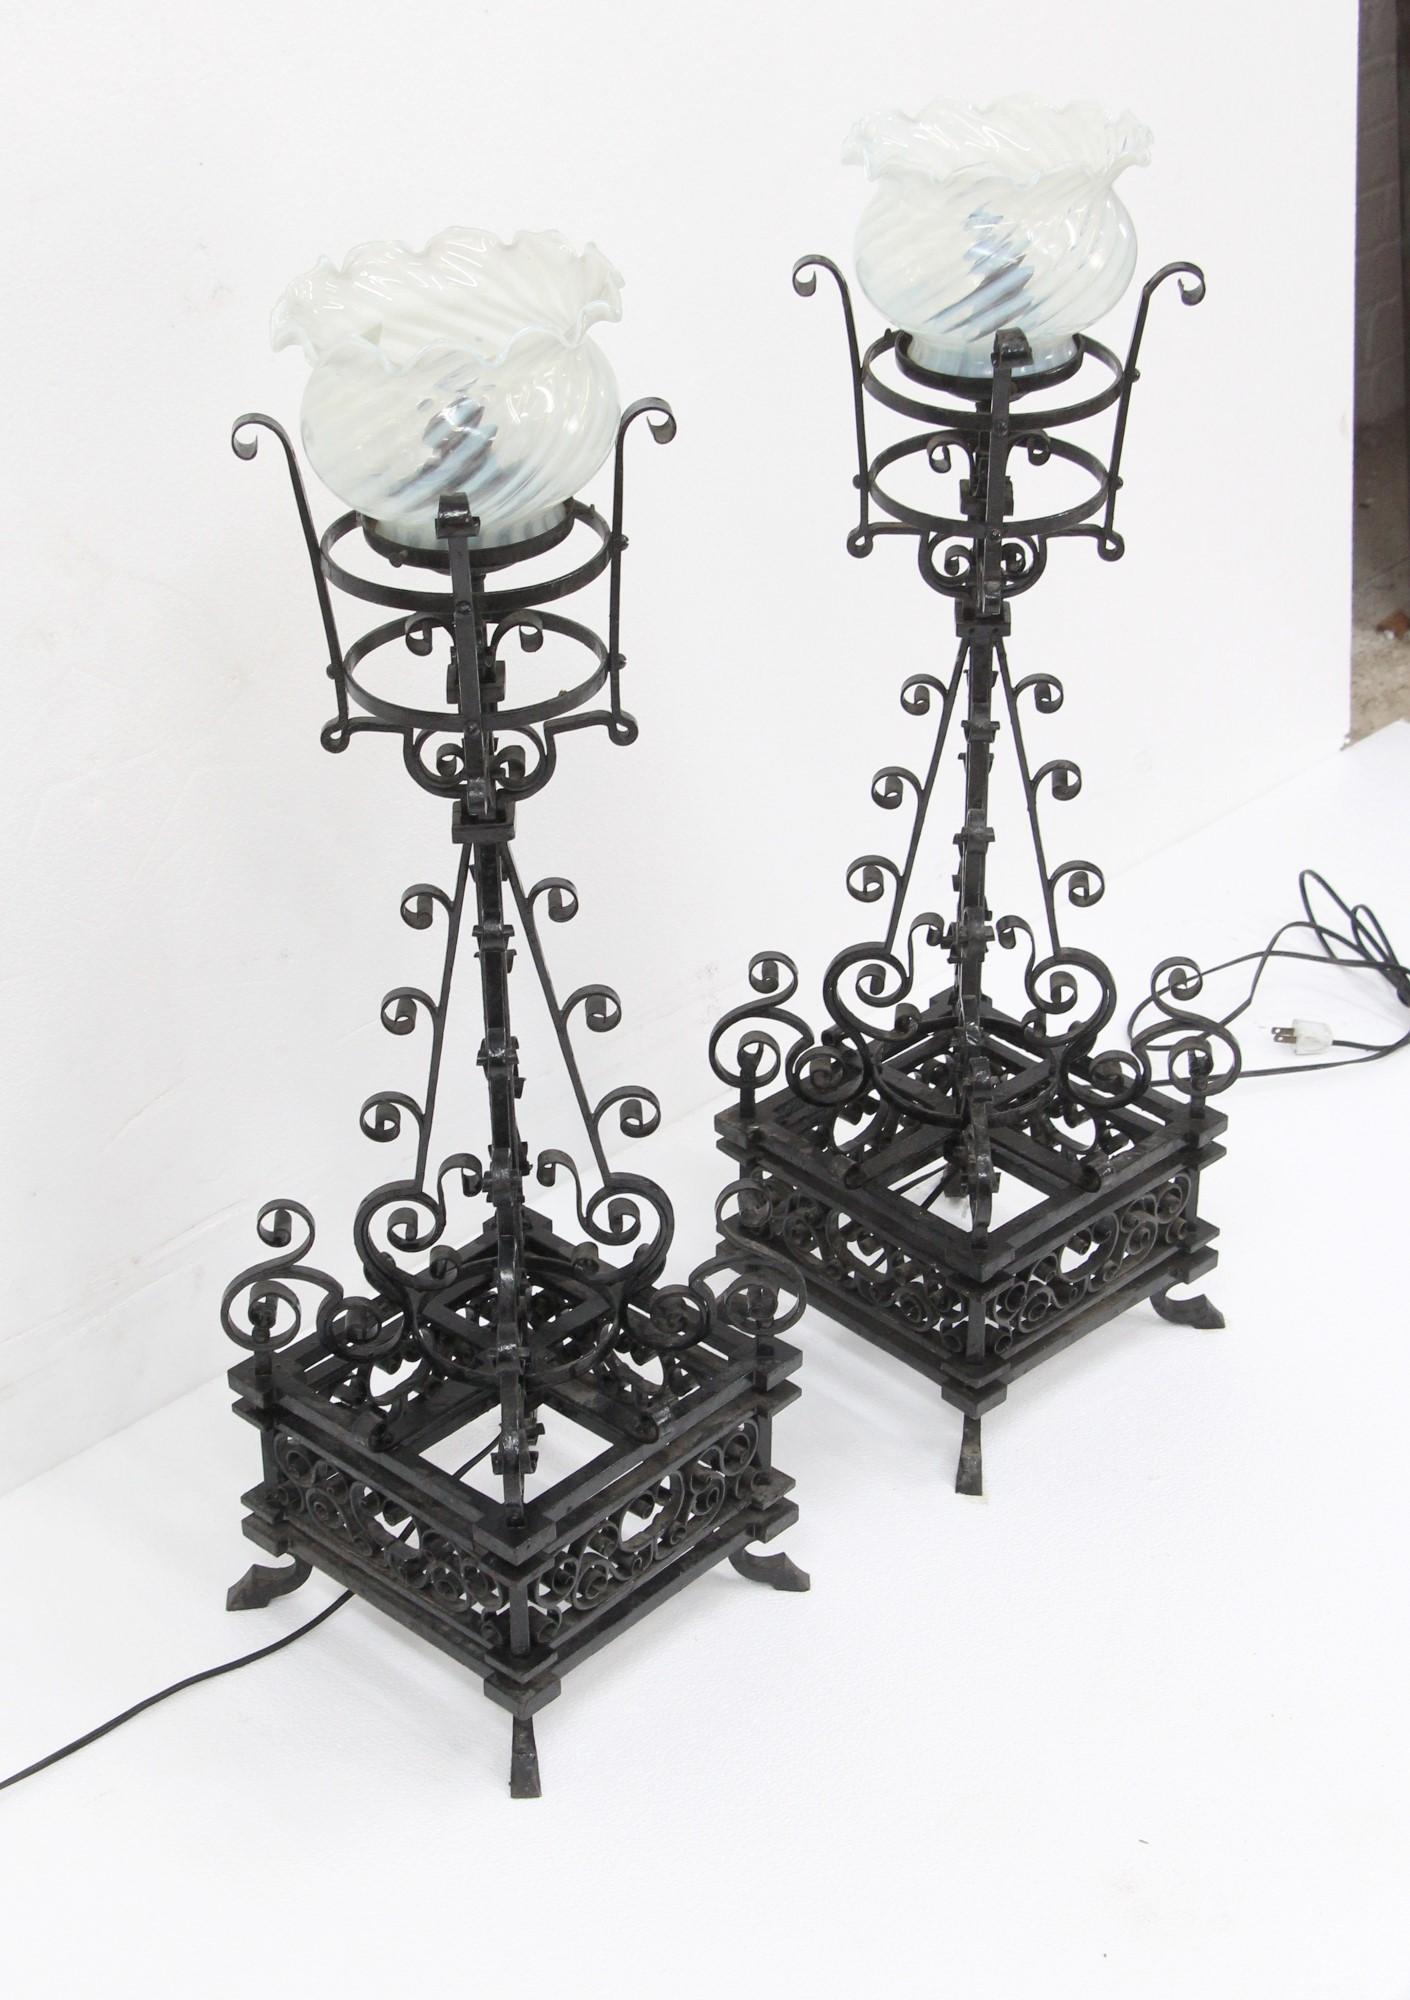 Hohe Tischlampen aus dem späten 19. Jahrhundert aus handgeschmiedetem schwarzem Schmiedeeisen. Das Schmiedeeisen ist mit feinen, komplizierten Details versehen. Die mitgelieferten mundgeblasenen Lampenschirme wurden später hinzugefügt. Ursprünglich